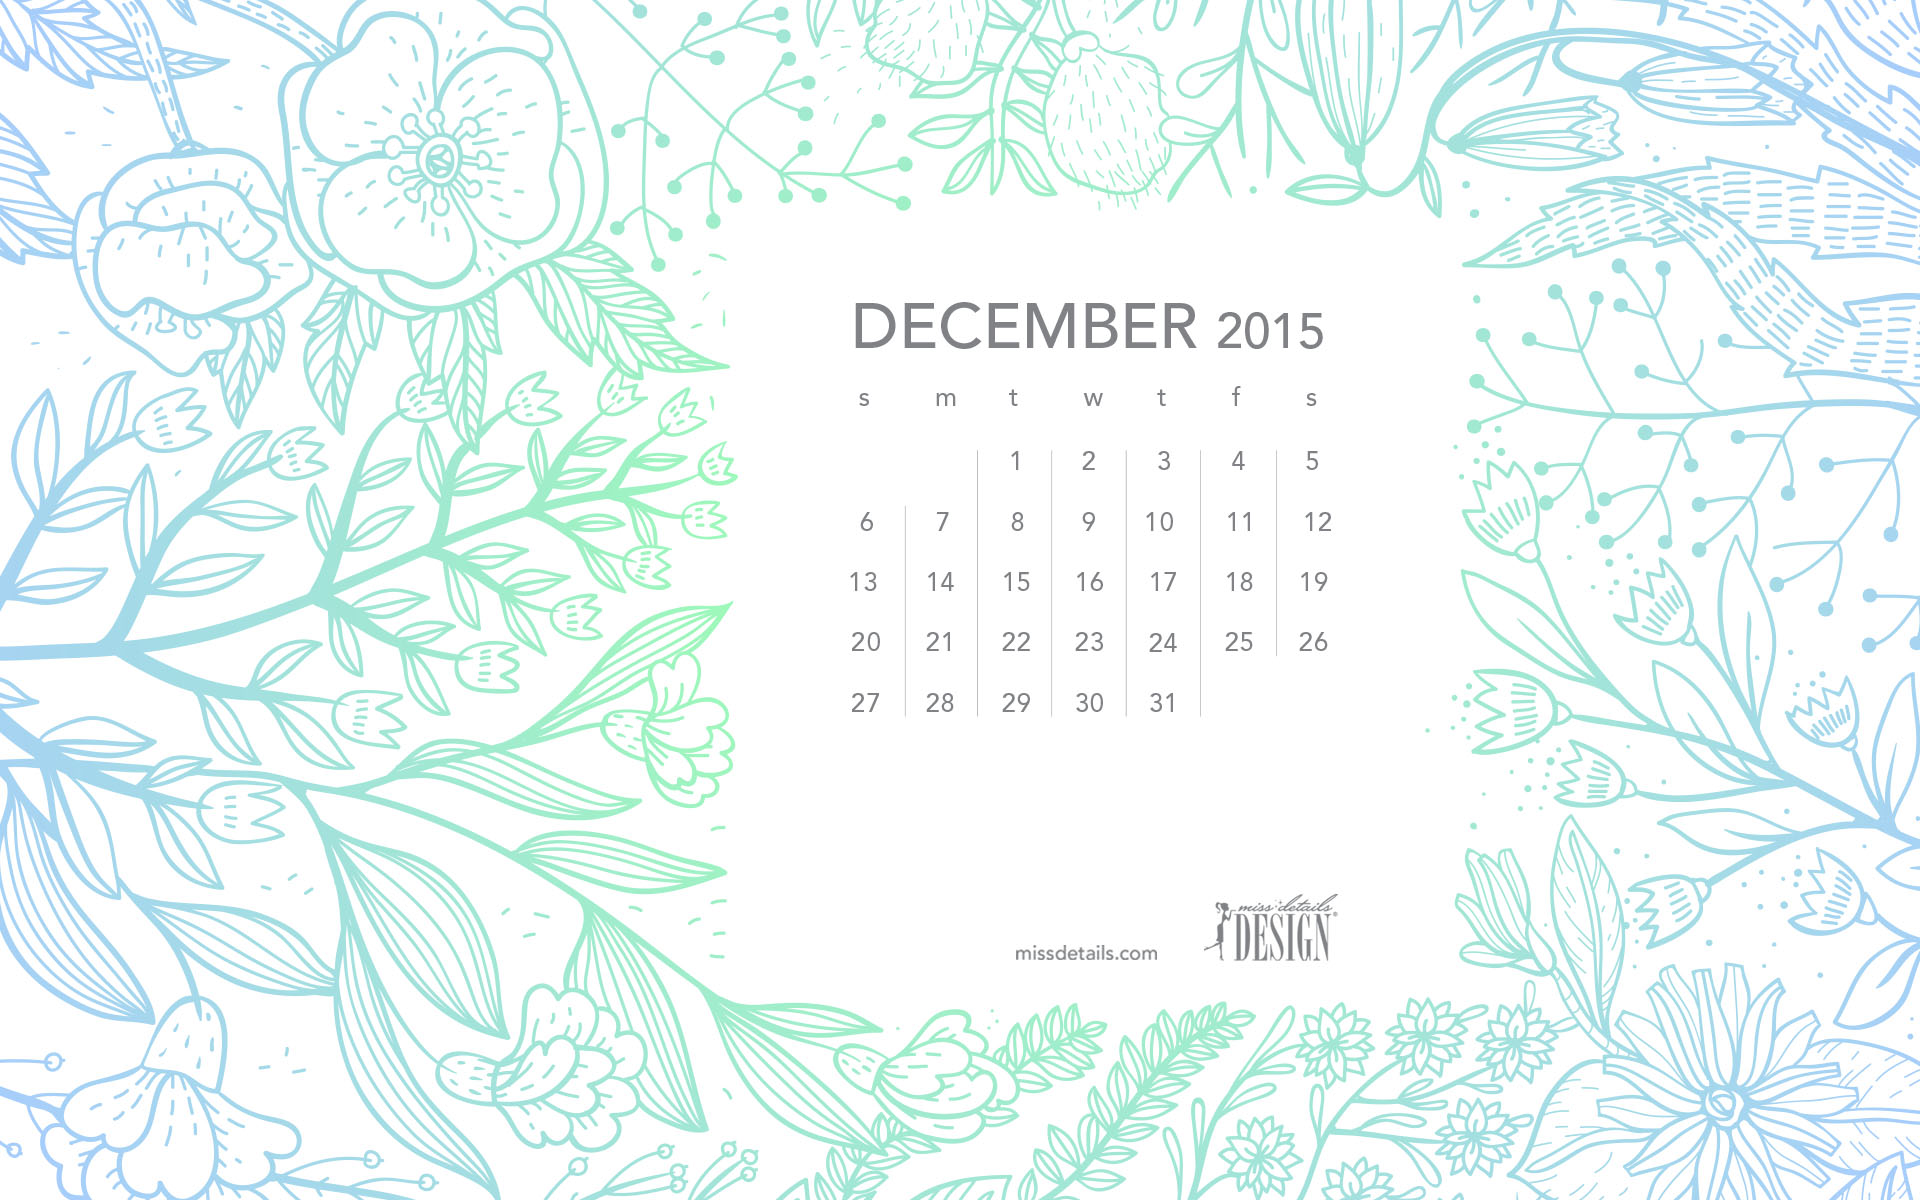 Free inspiring December 2015 desktop calendar from missdetails.com - December Flowers